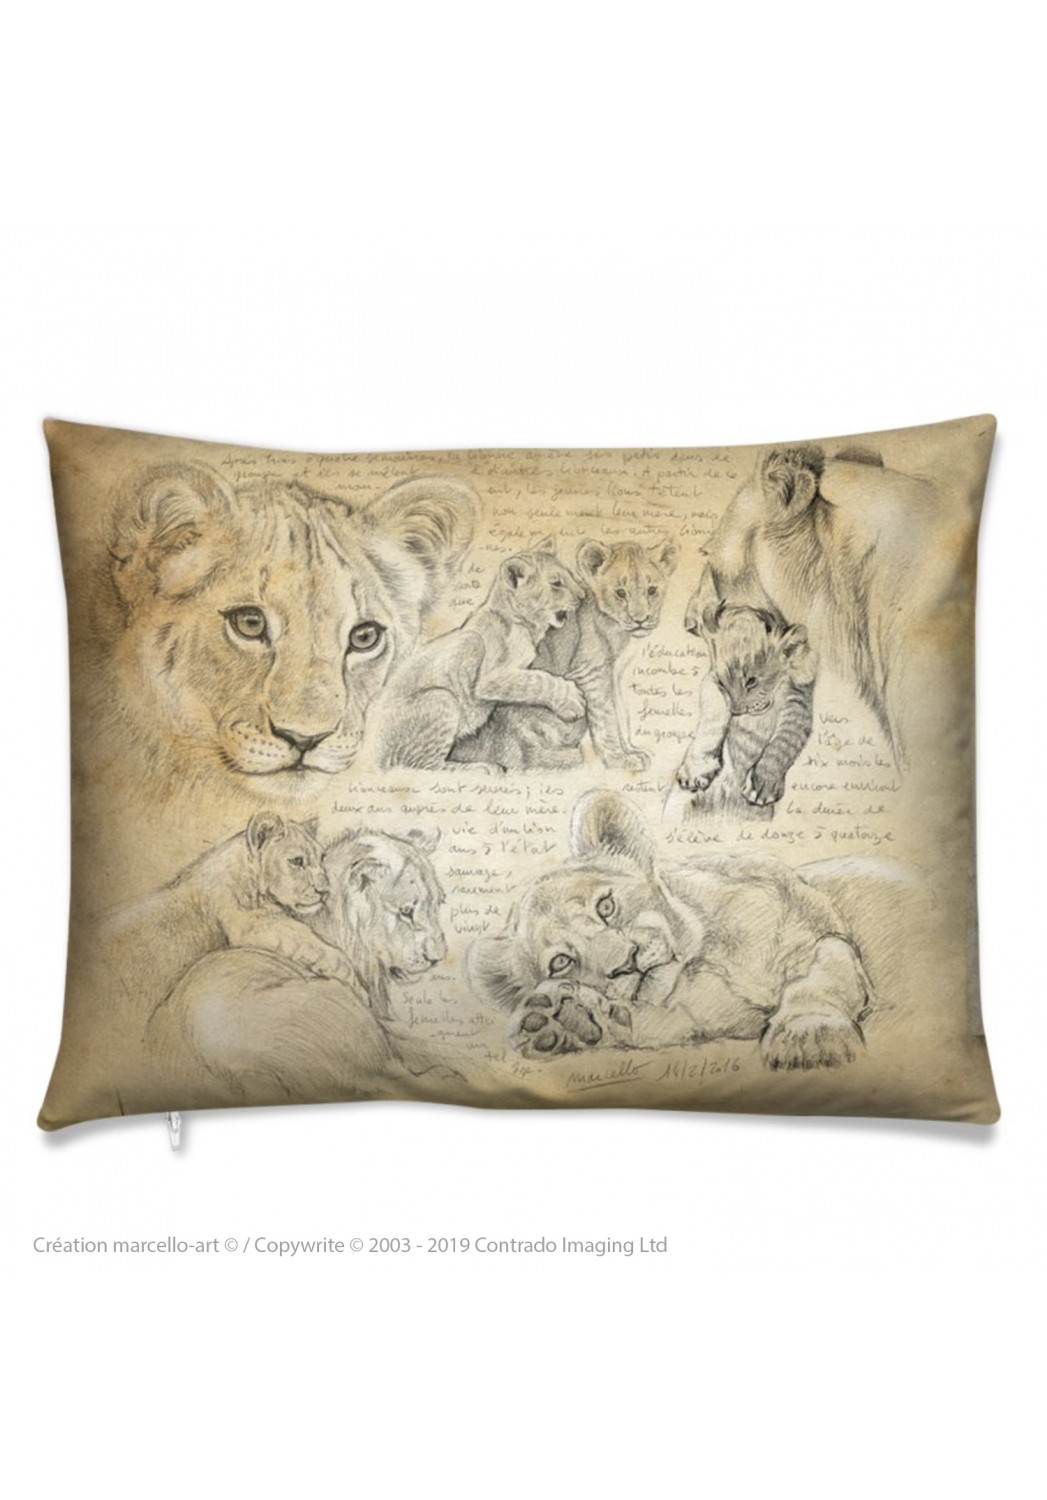 Marcello-art: Fashion accessory Cushion 331 lion cubs